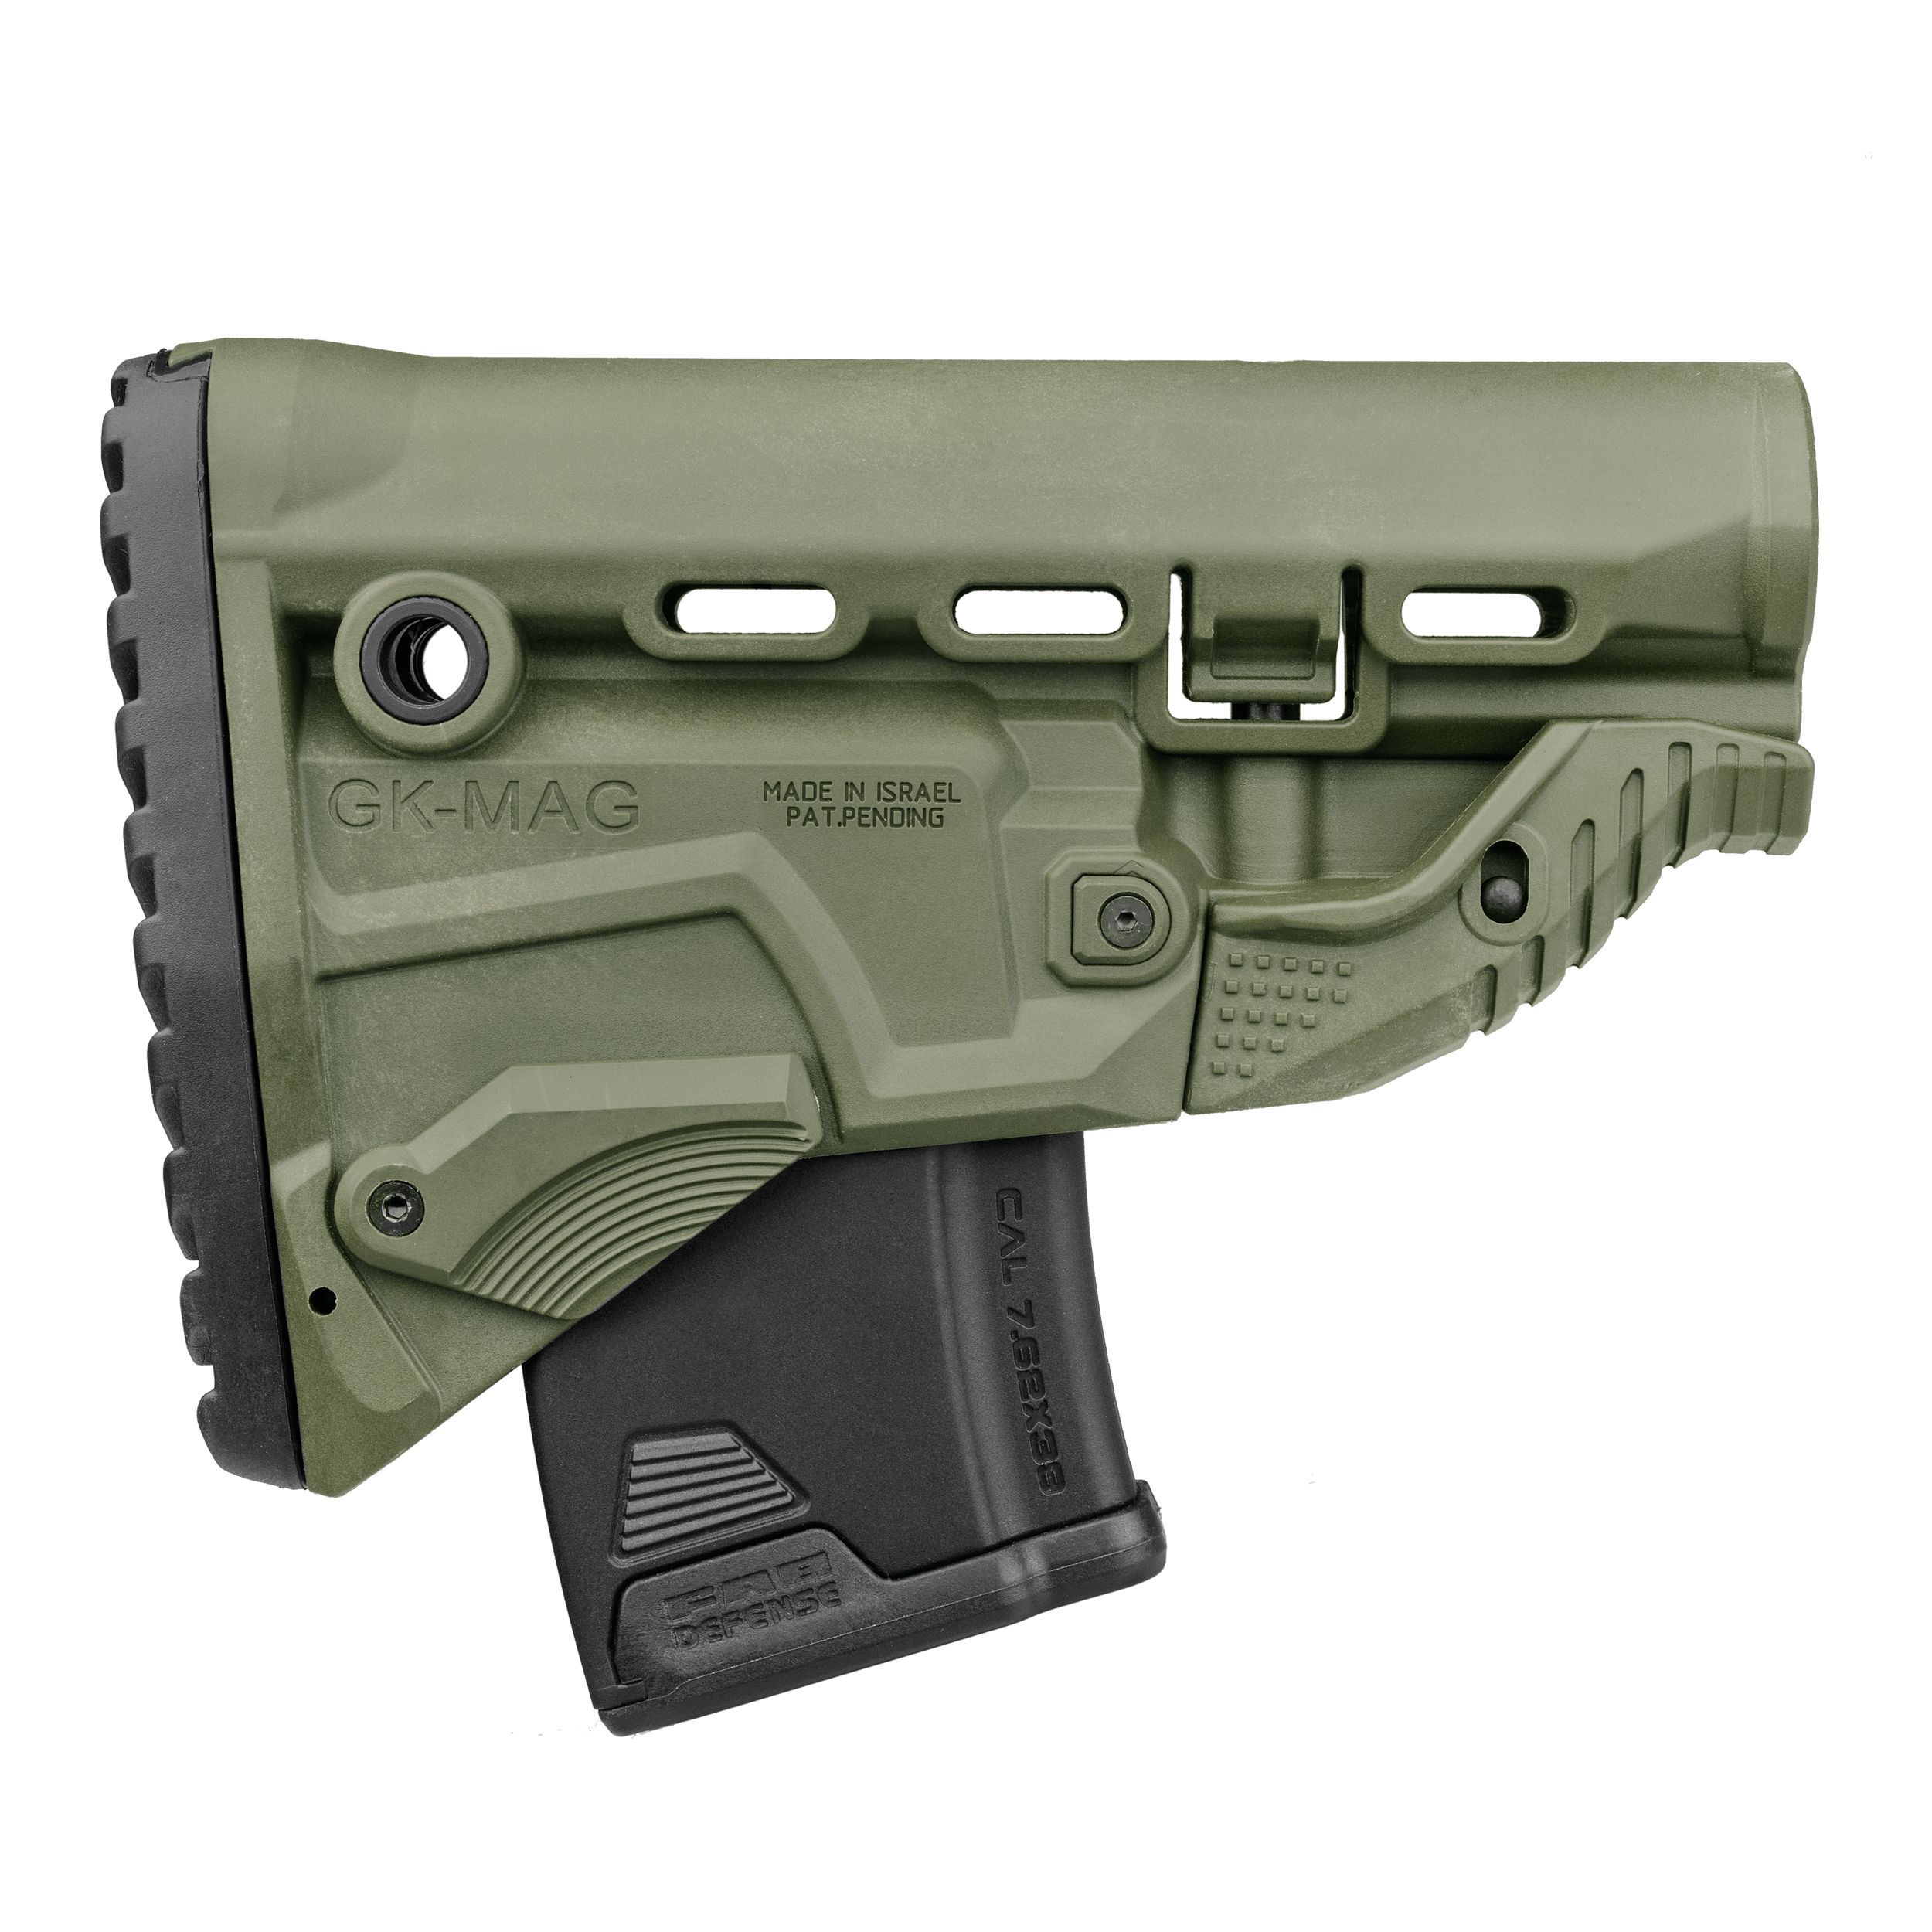 Schulterstütze AK47 - mit 10 Schuss Reservemagazin